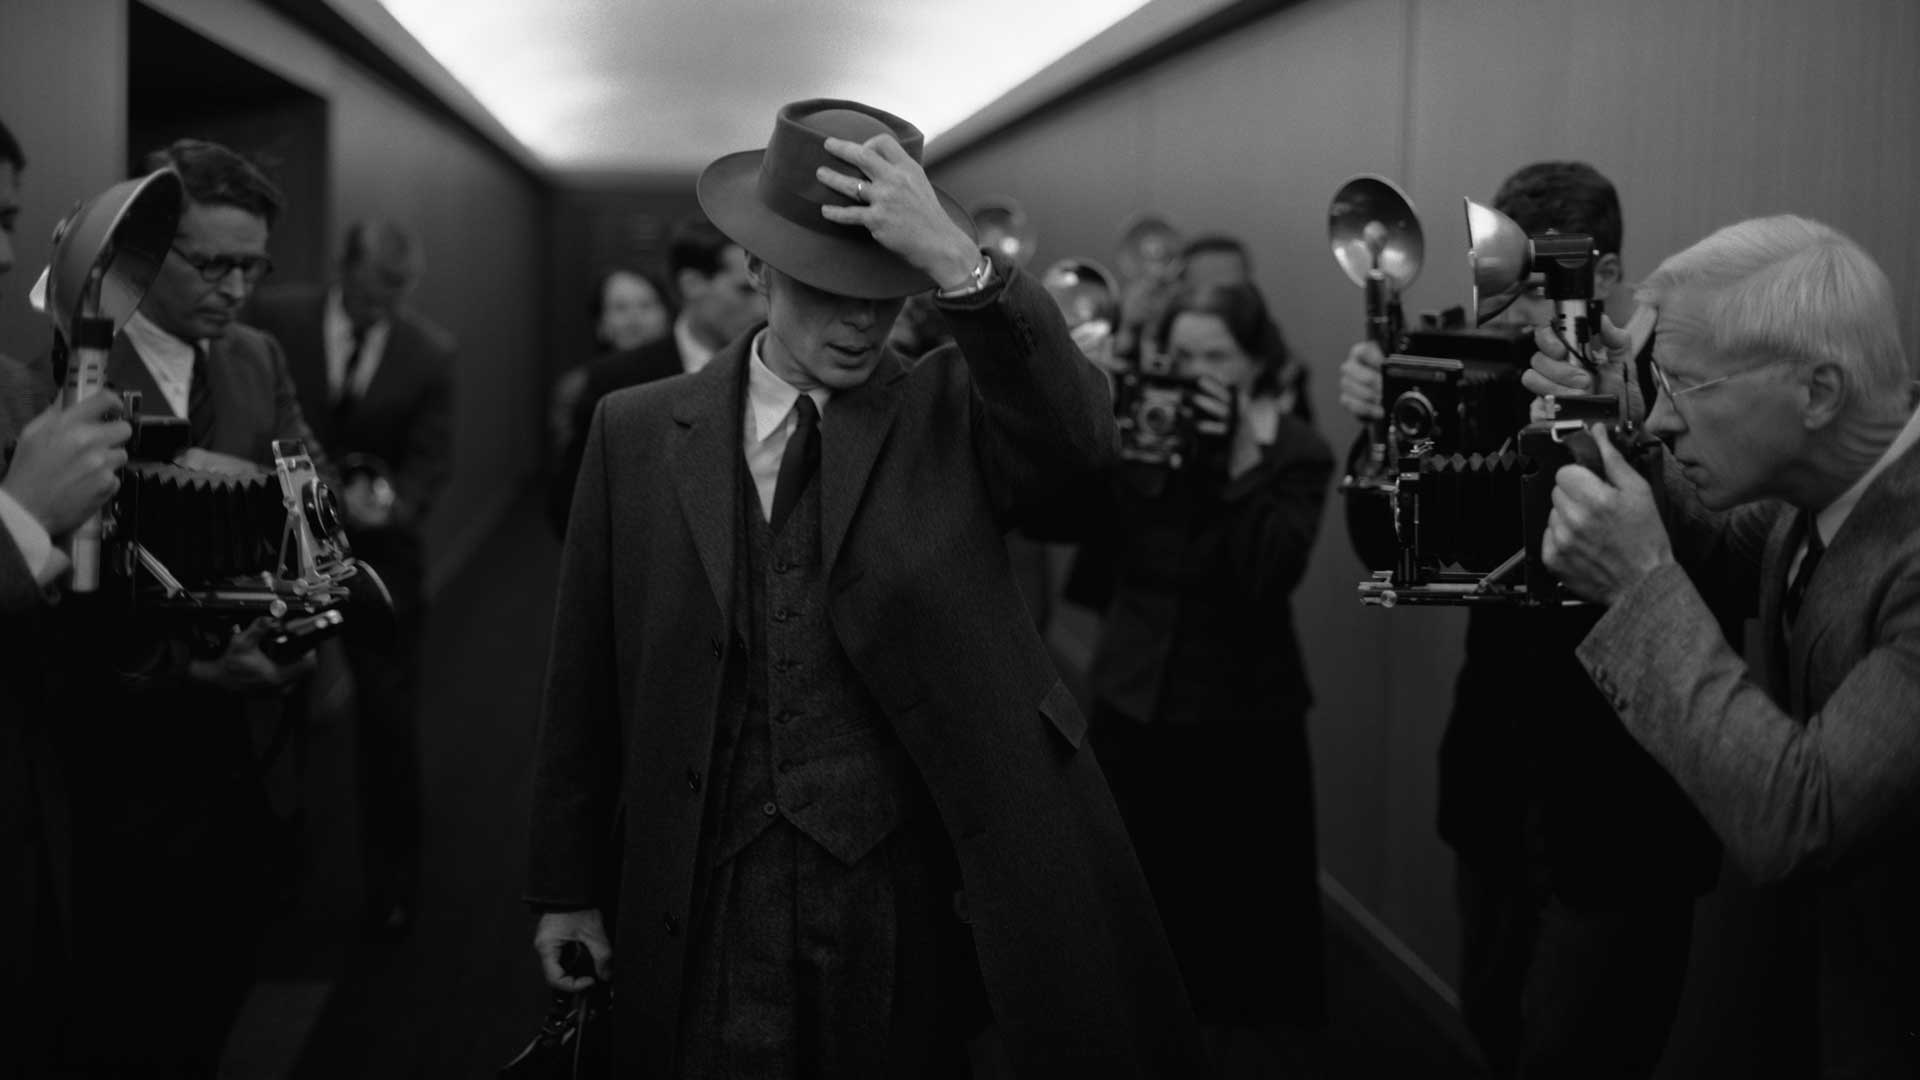 کیلیان مورفی در نقش جولیوس رابرت اوپنهایمر، پدر بمب اتم در فیلم Oppenheimer به نویسندگی و کارگردانی کریستوفر نولان